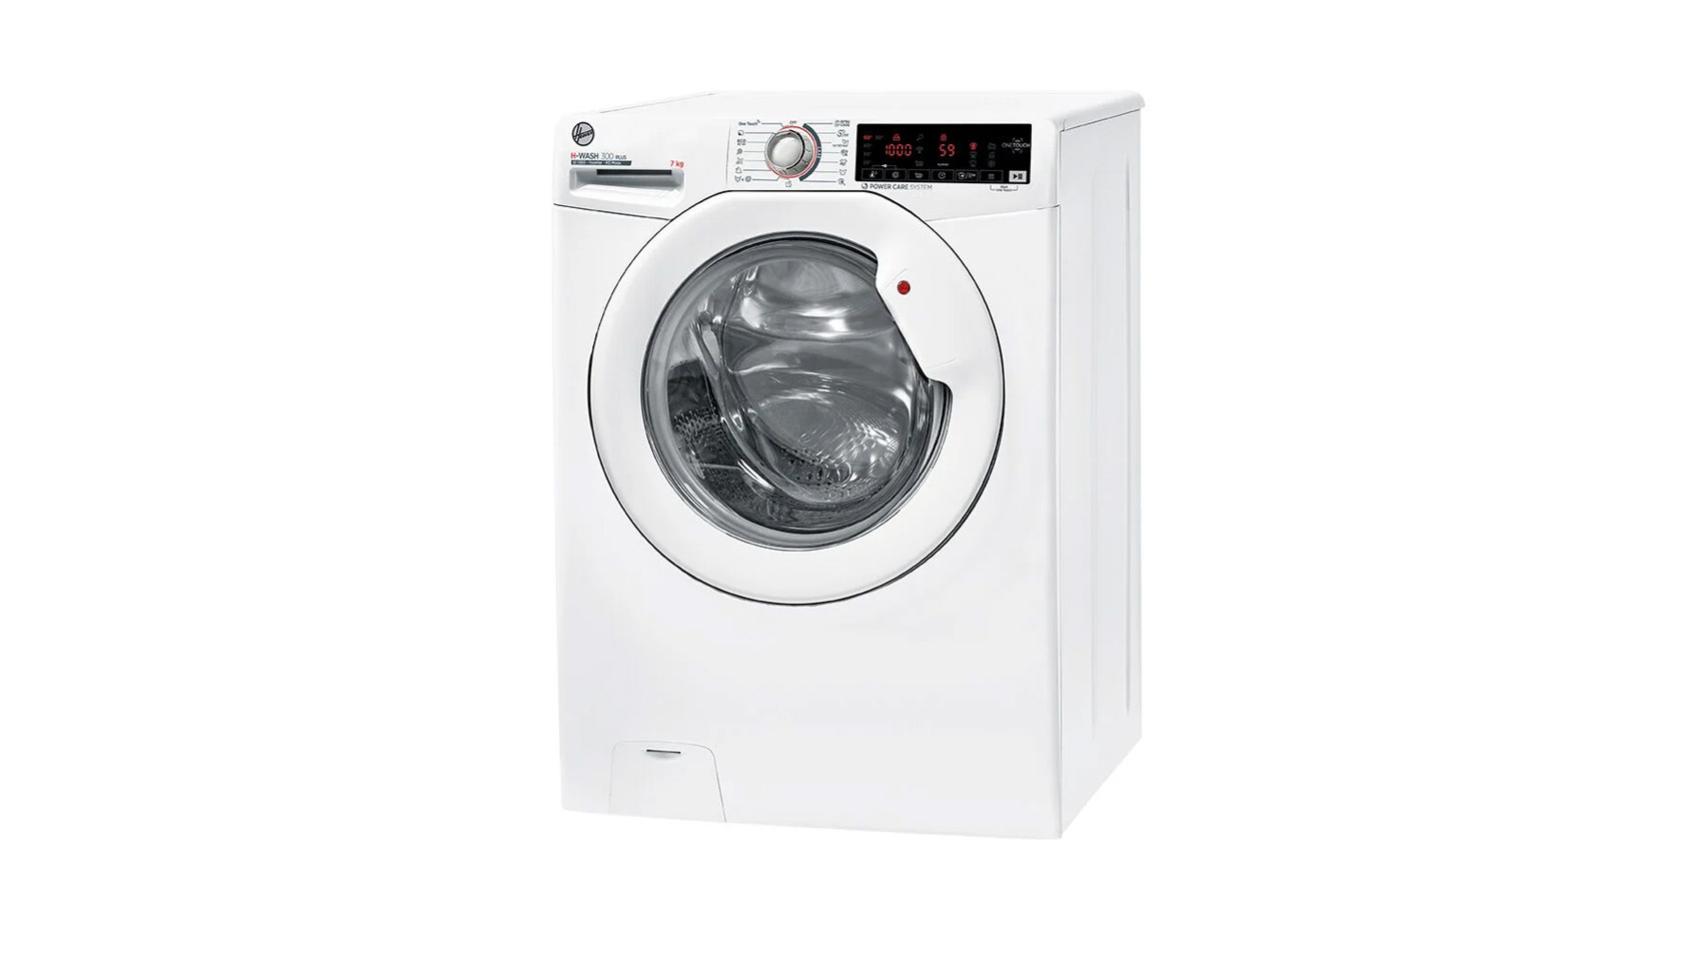 Lidl tiene una compra de 29,99 euros que transforma cualquier lavadora al  instante